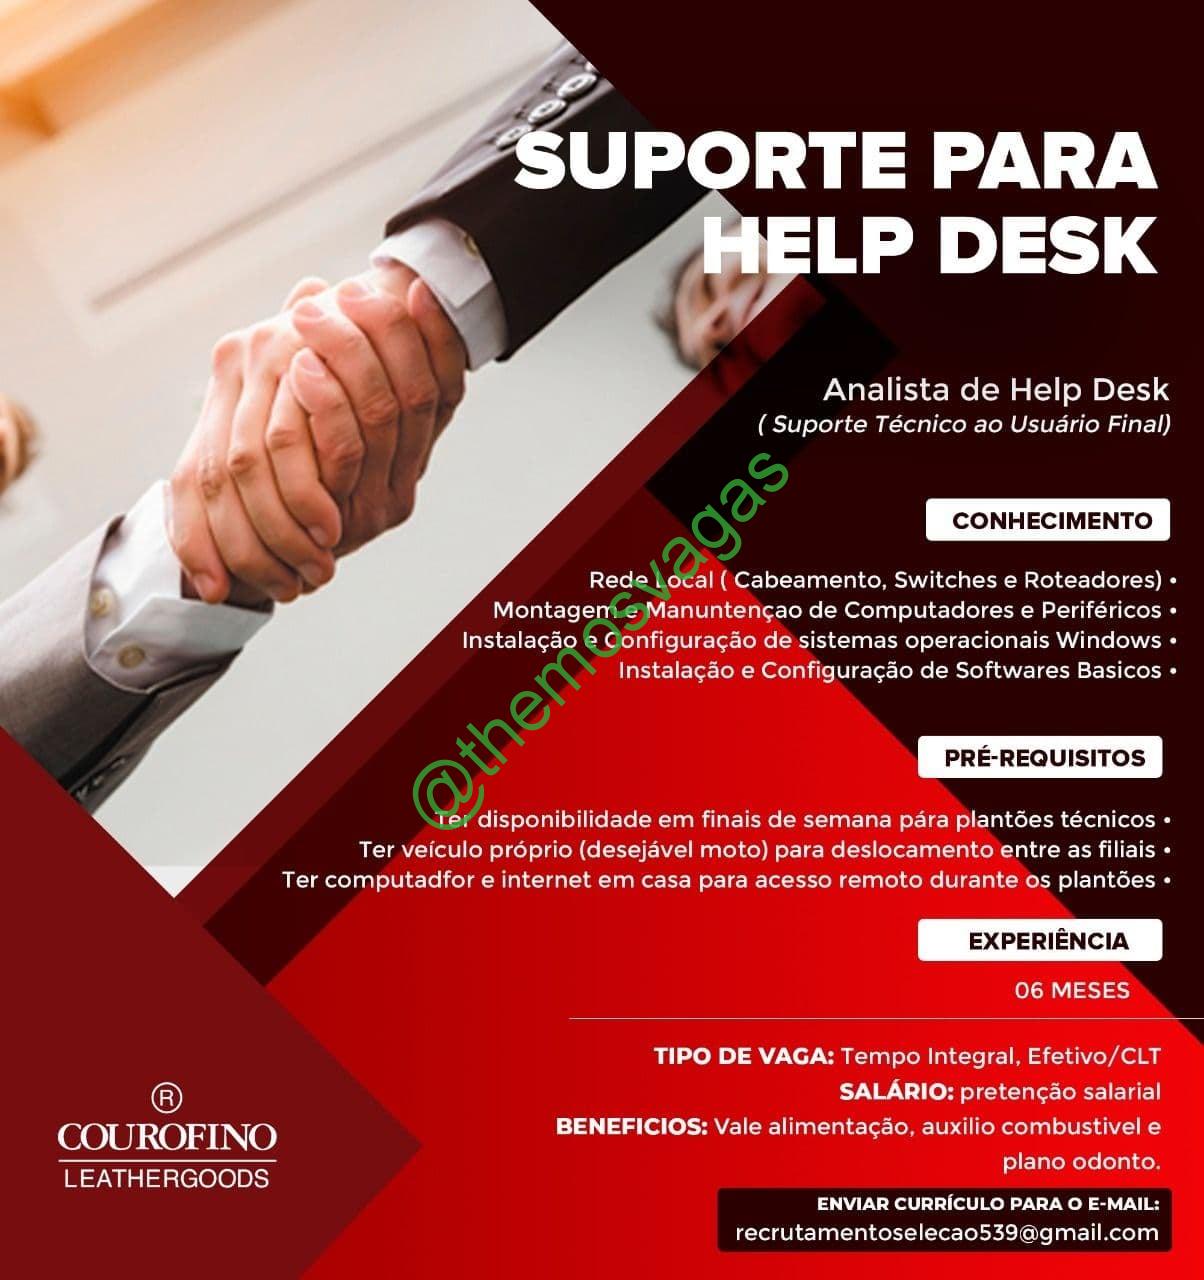 Control Desk, Fortaleza – CE, 01 vaga(s)